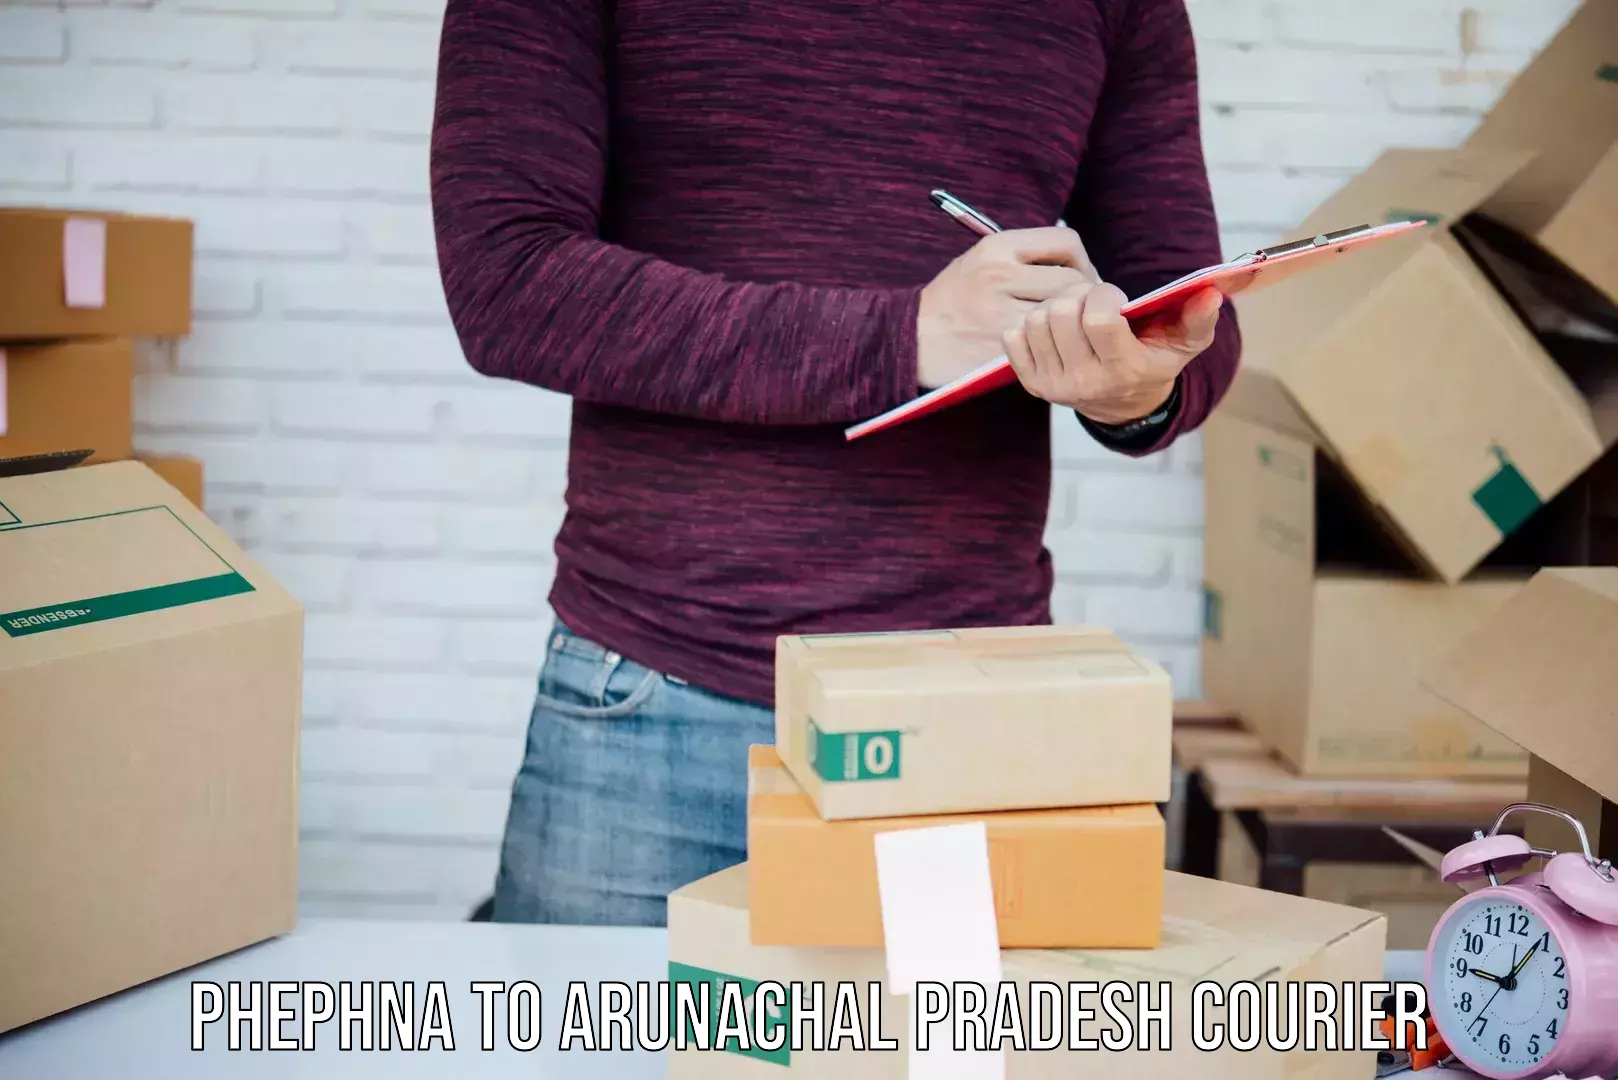 Nationwide parcel services Phephna to Arunachal Pradesh